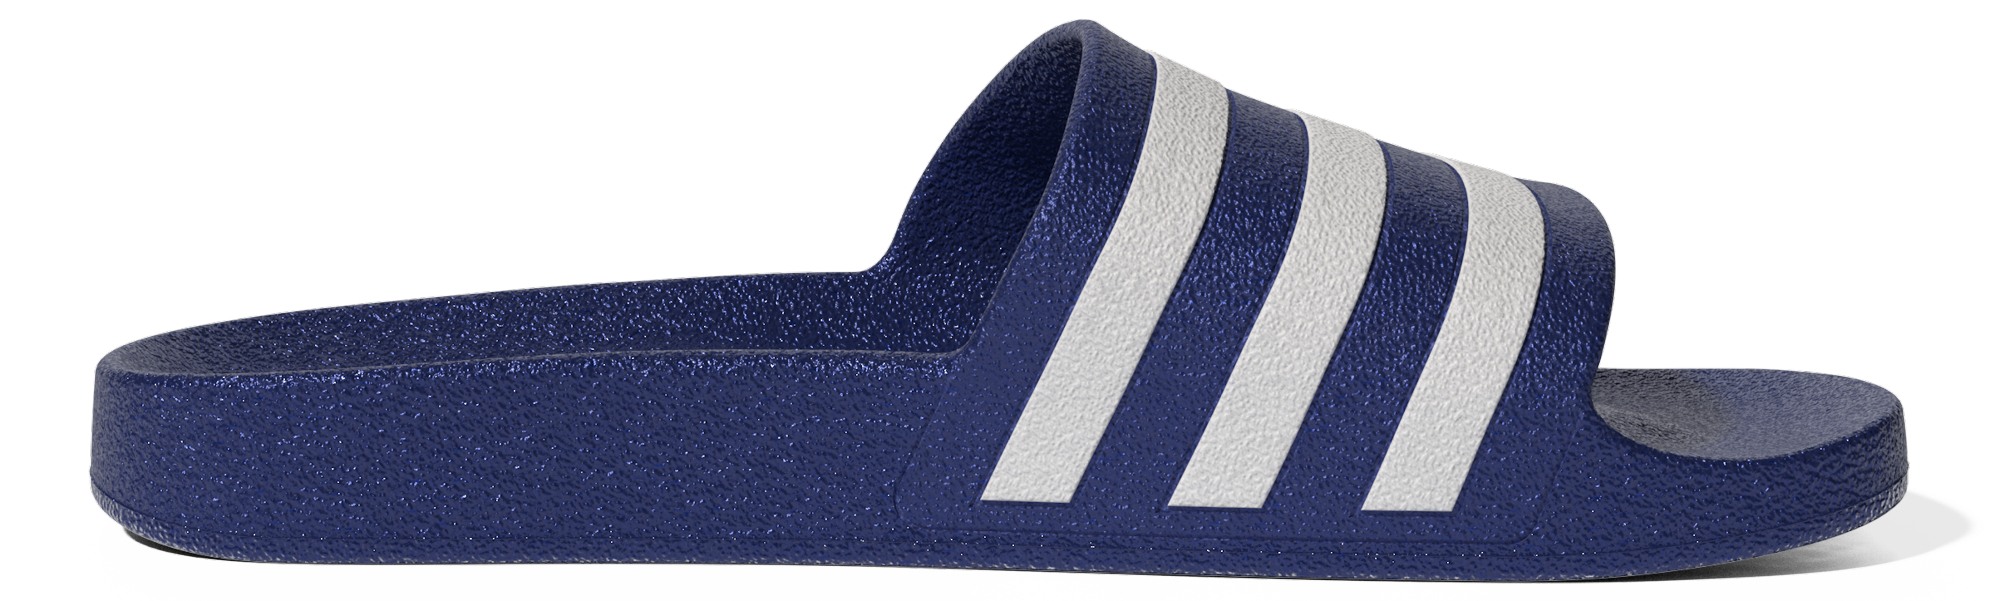 фото Сланцы мужские adidas adilette aqua синие 6 uk